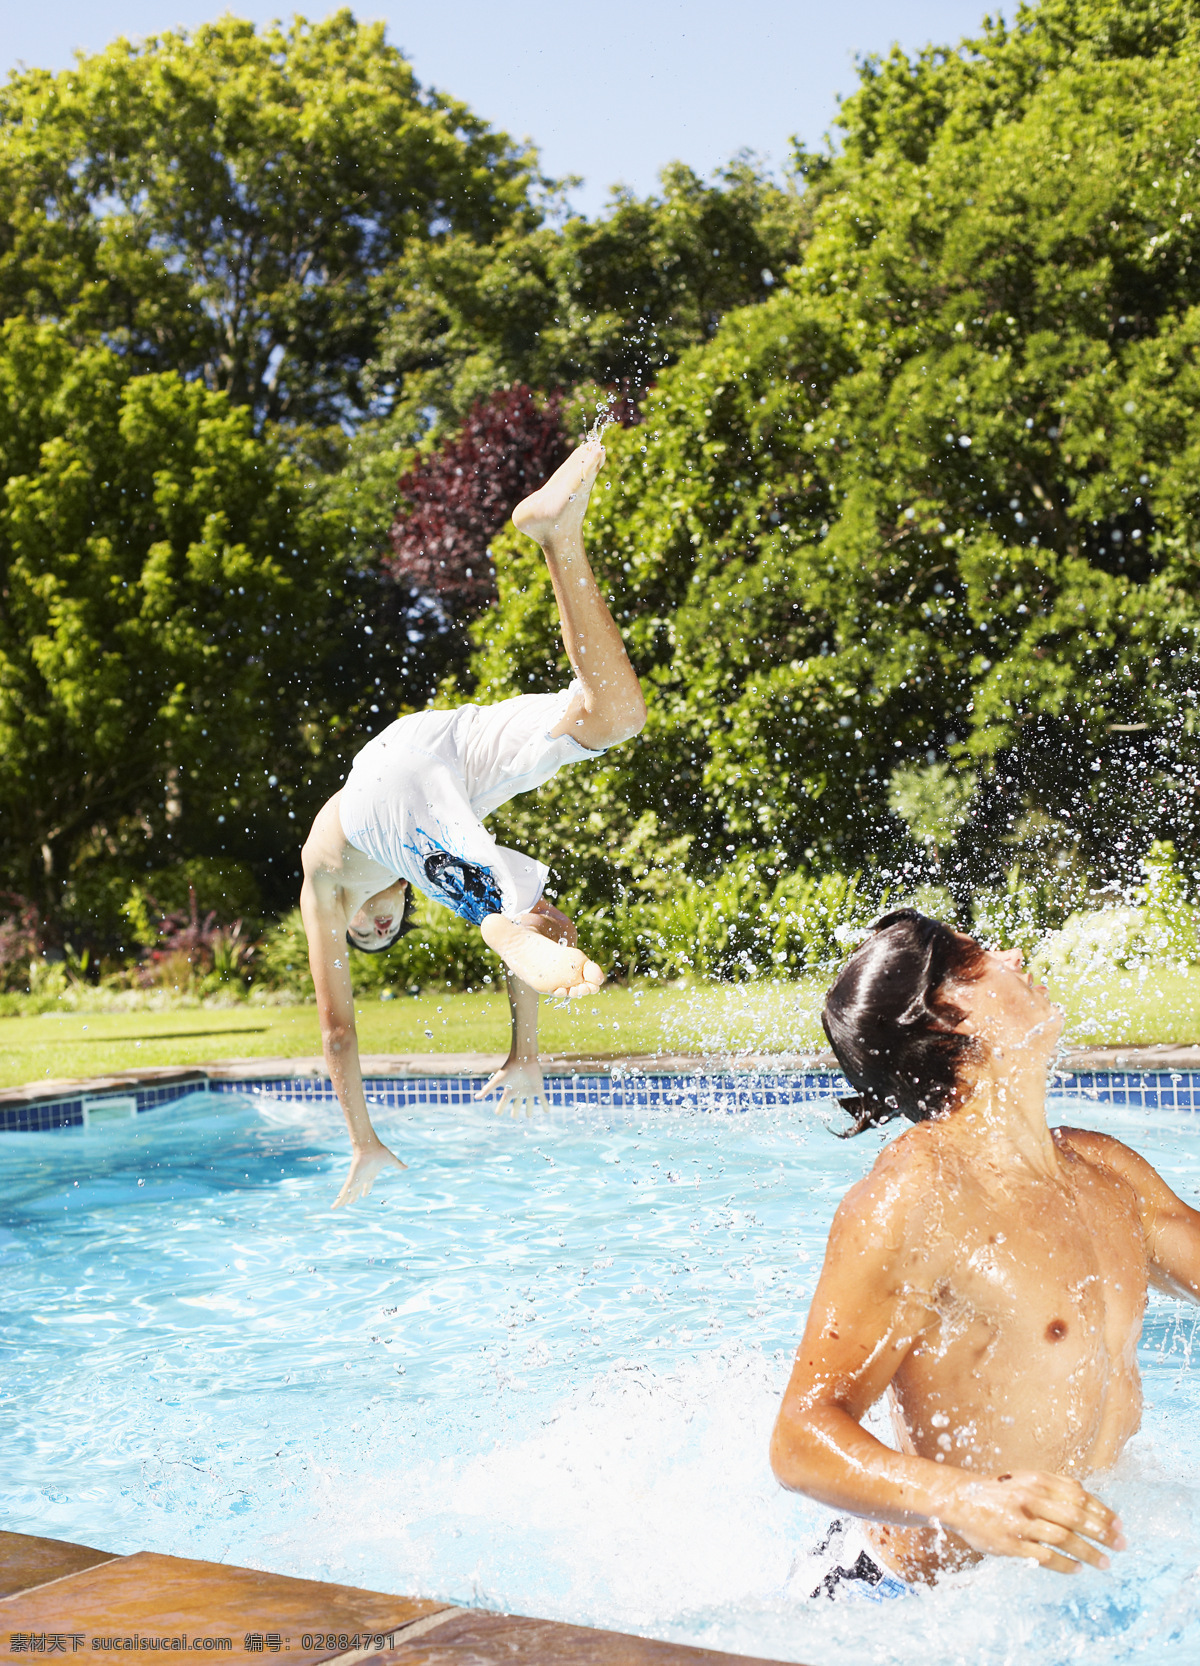 两个 游泳 男孩 人物 男性 少男 运动 跳水 跳跃 活力 动感 水花 自然 生活人物 人物图片